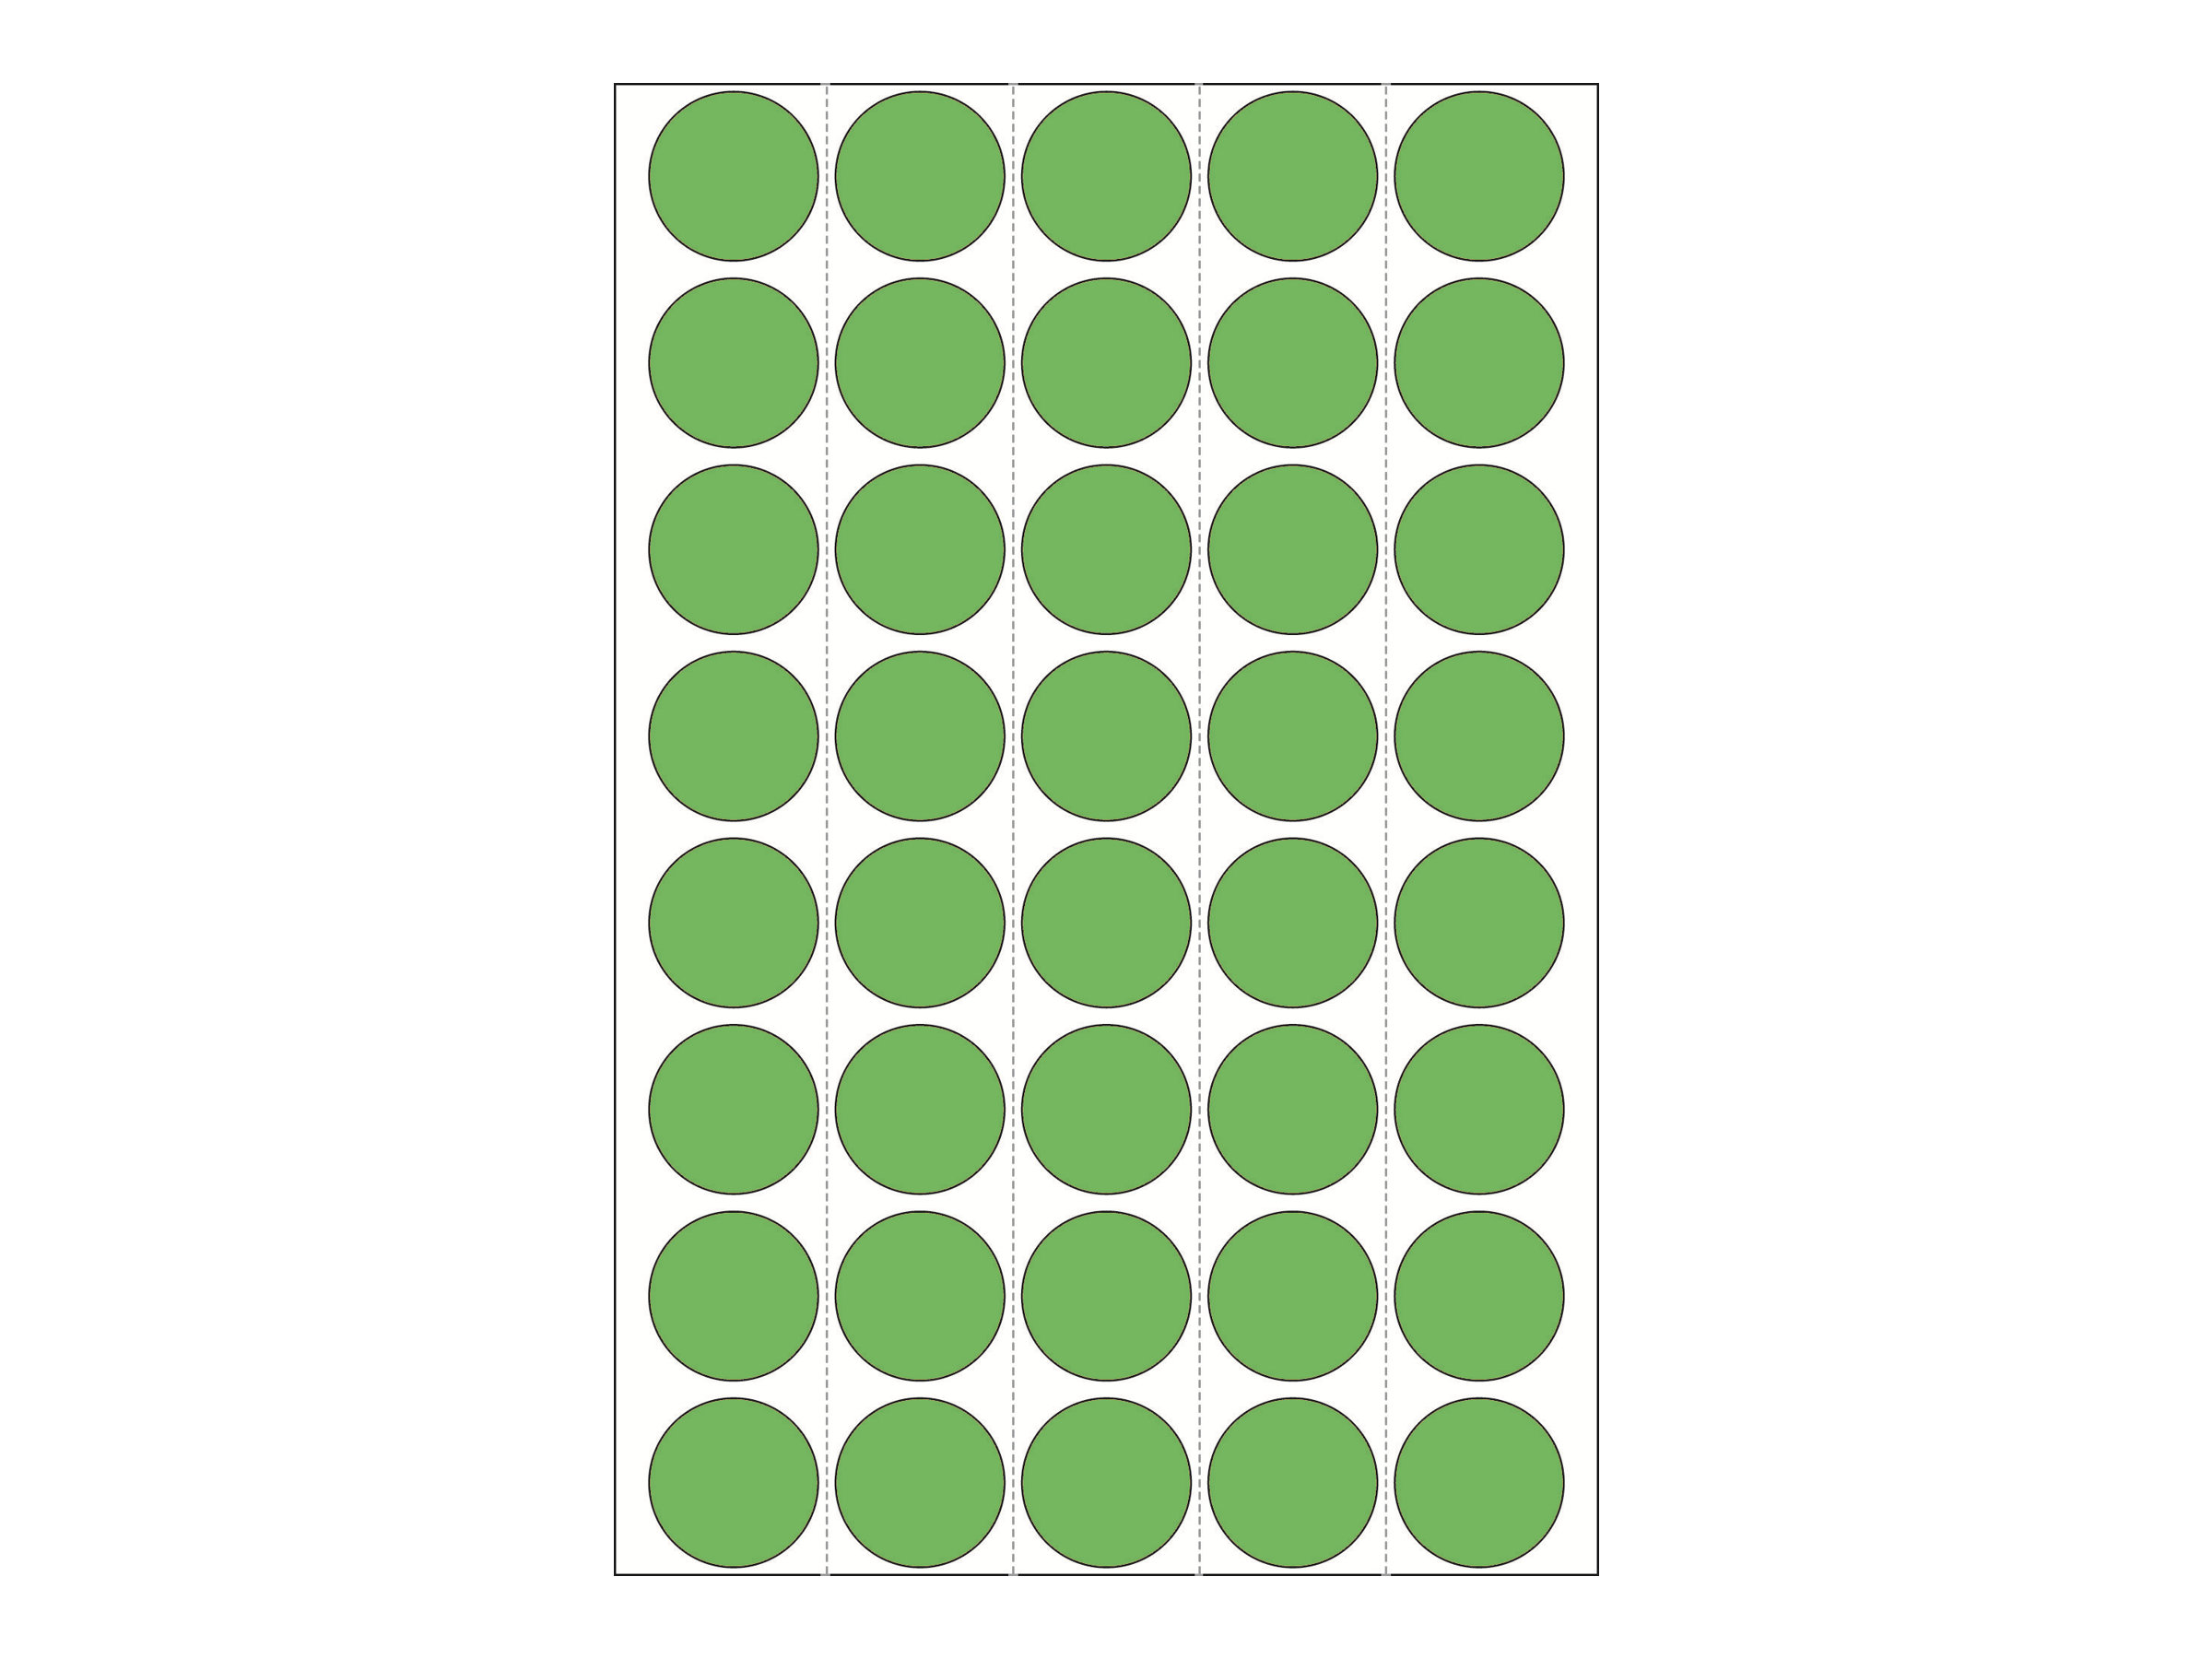 HERMA Papier - permanenter Klebstoff - grün - 19 mm rund 1280 Etikett(en) (32 Bogen x 40)